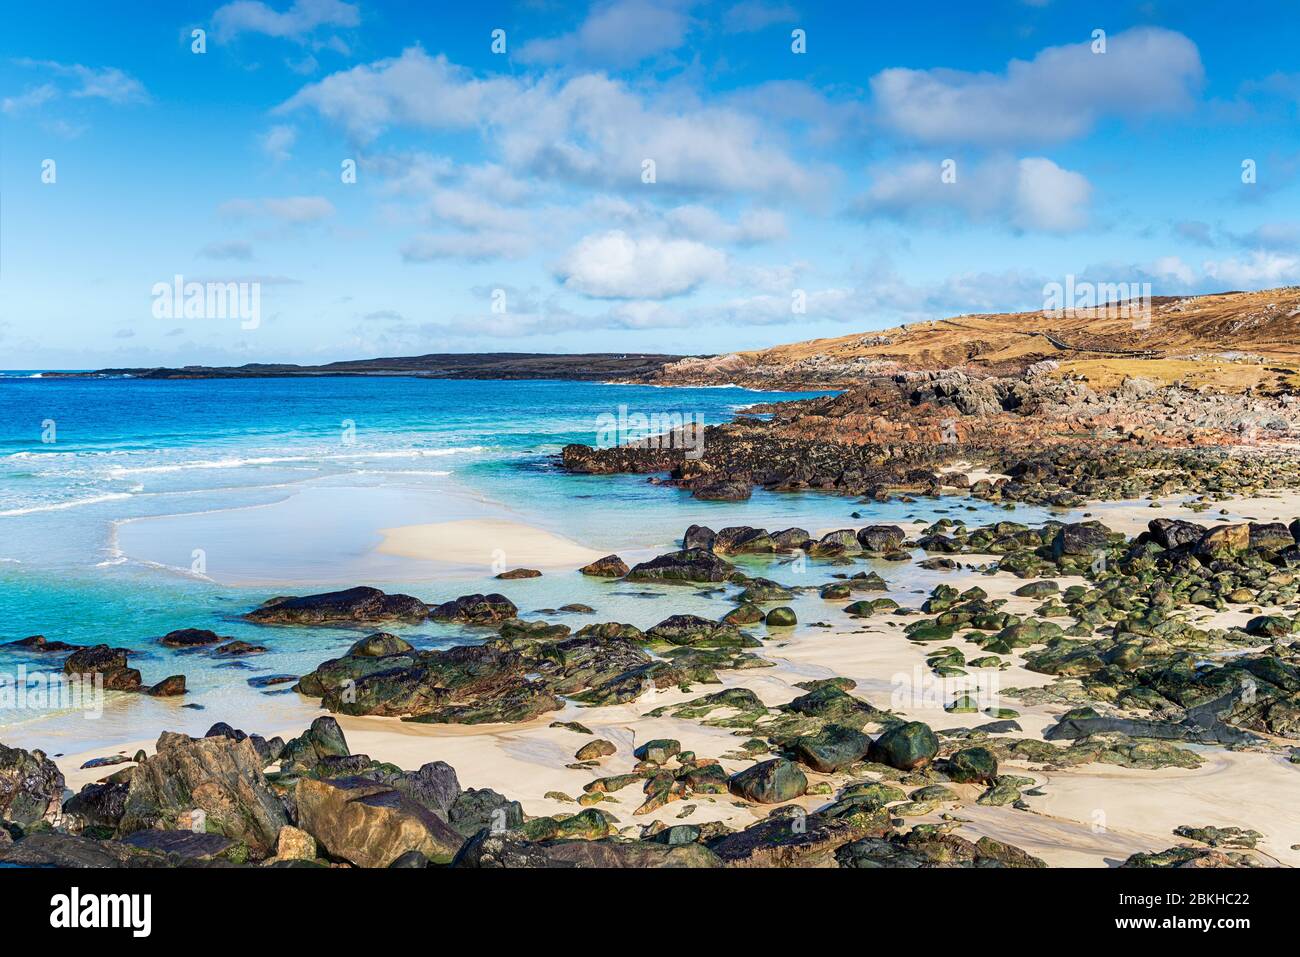 La belle plage de Mealista sur la côte ouest de l'île de Lewis dans les îles occidentales d'Écosse Banque D'Images